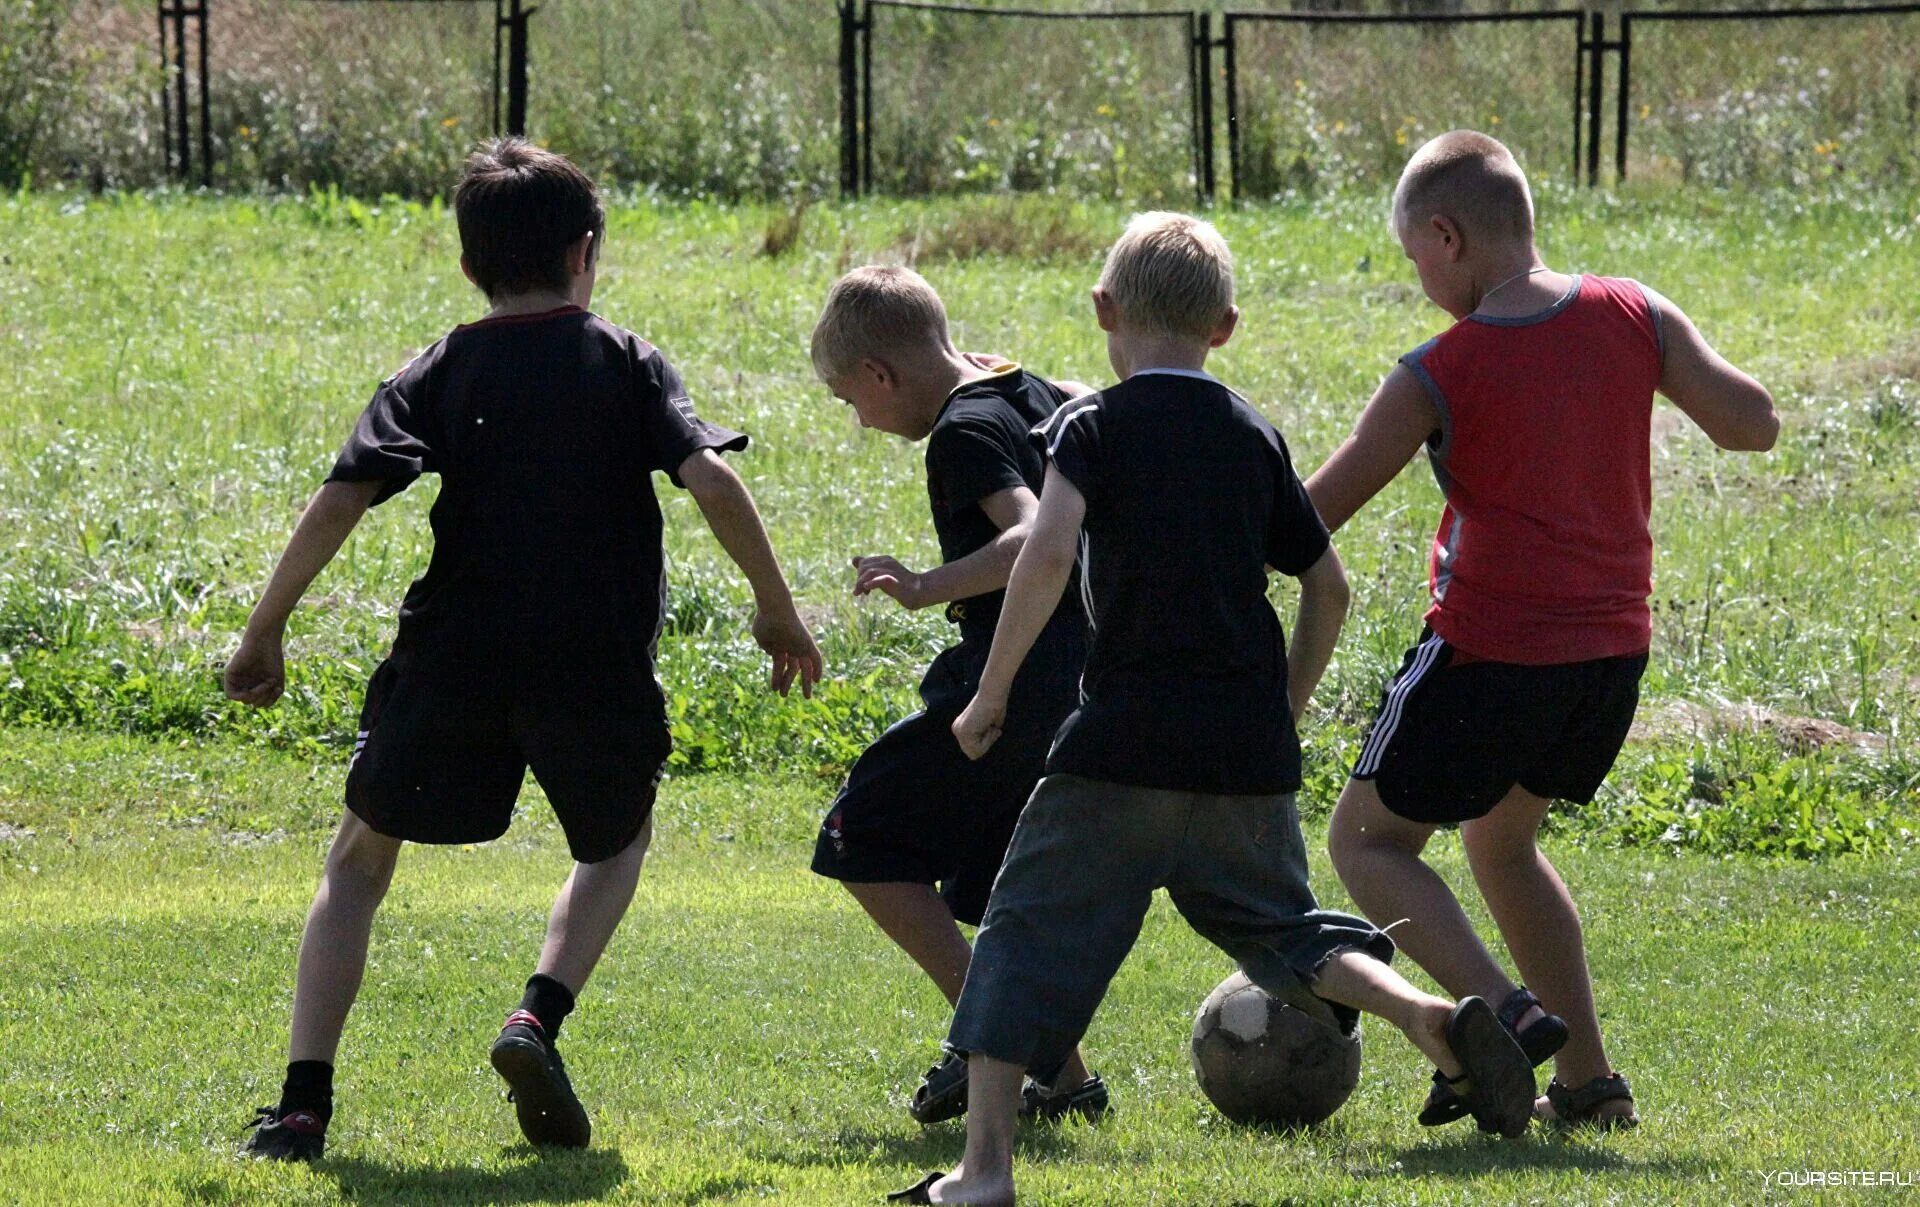 Во дворе ребята играли в футбол. Дети играют в футбол. Дети во дворе. Футбол во дворе. Дети играющие в футбол во дворе.